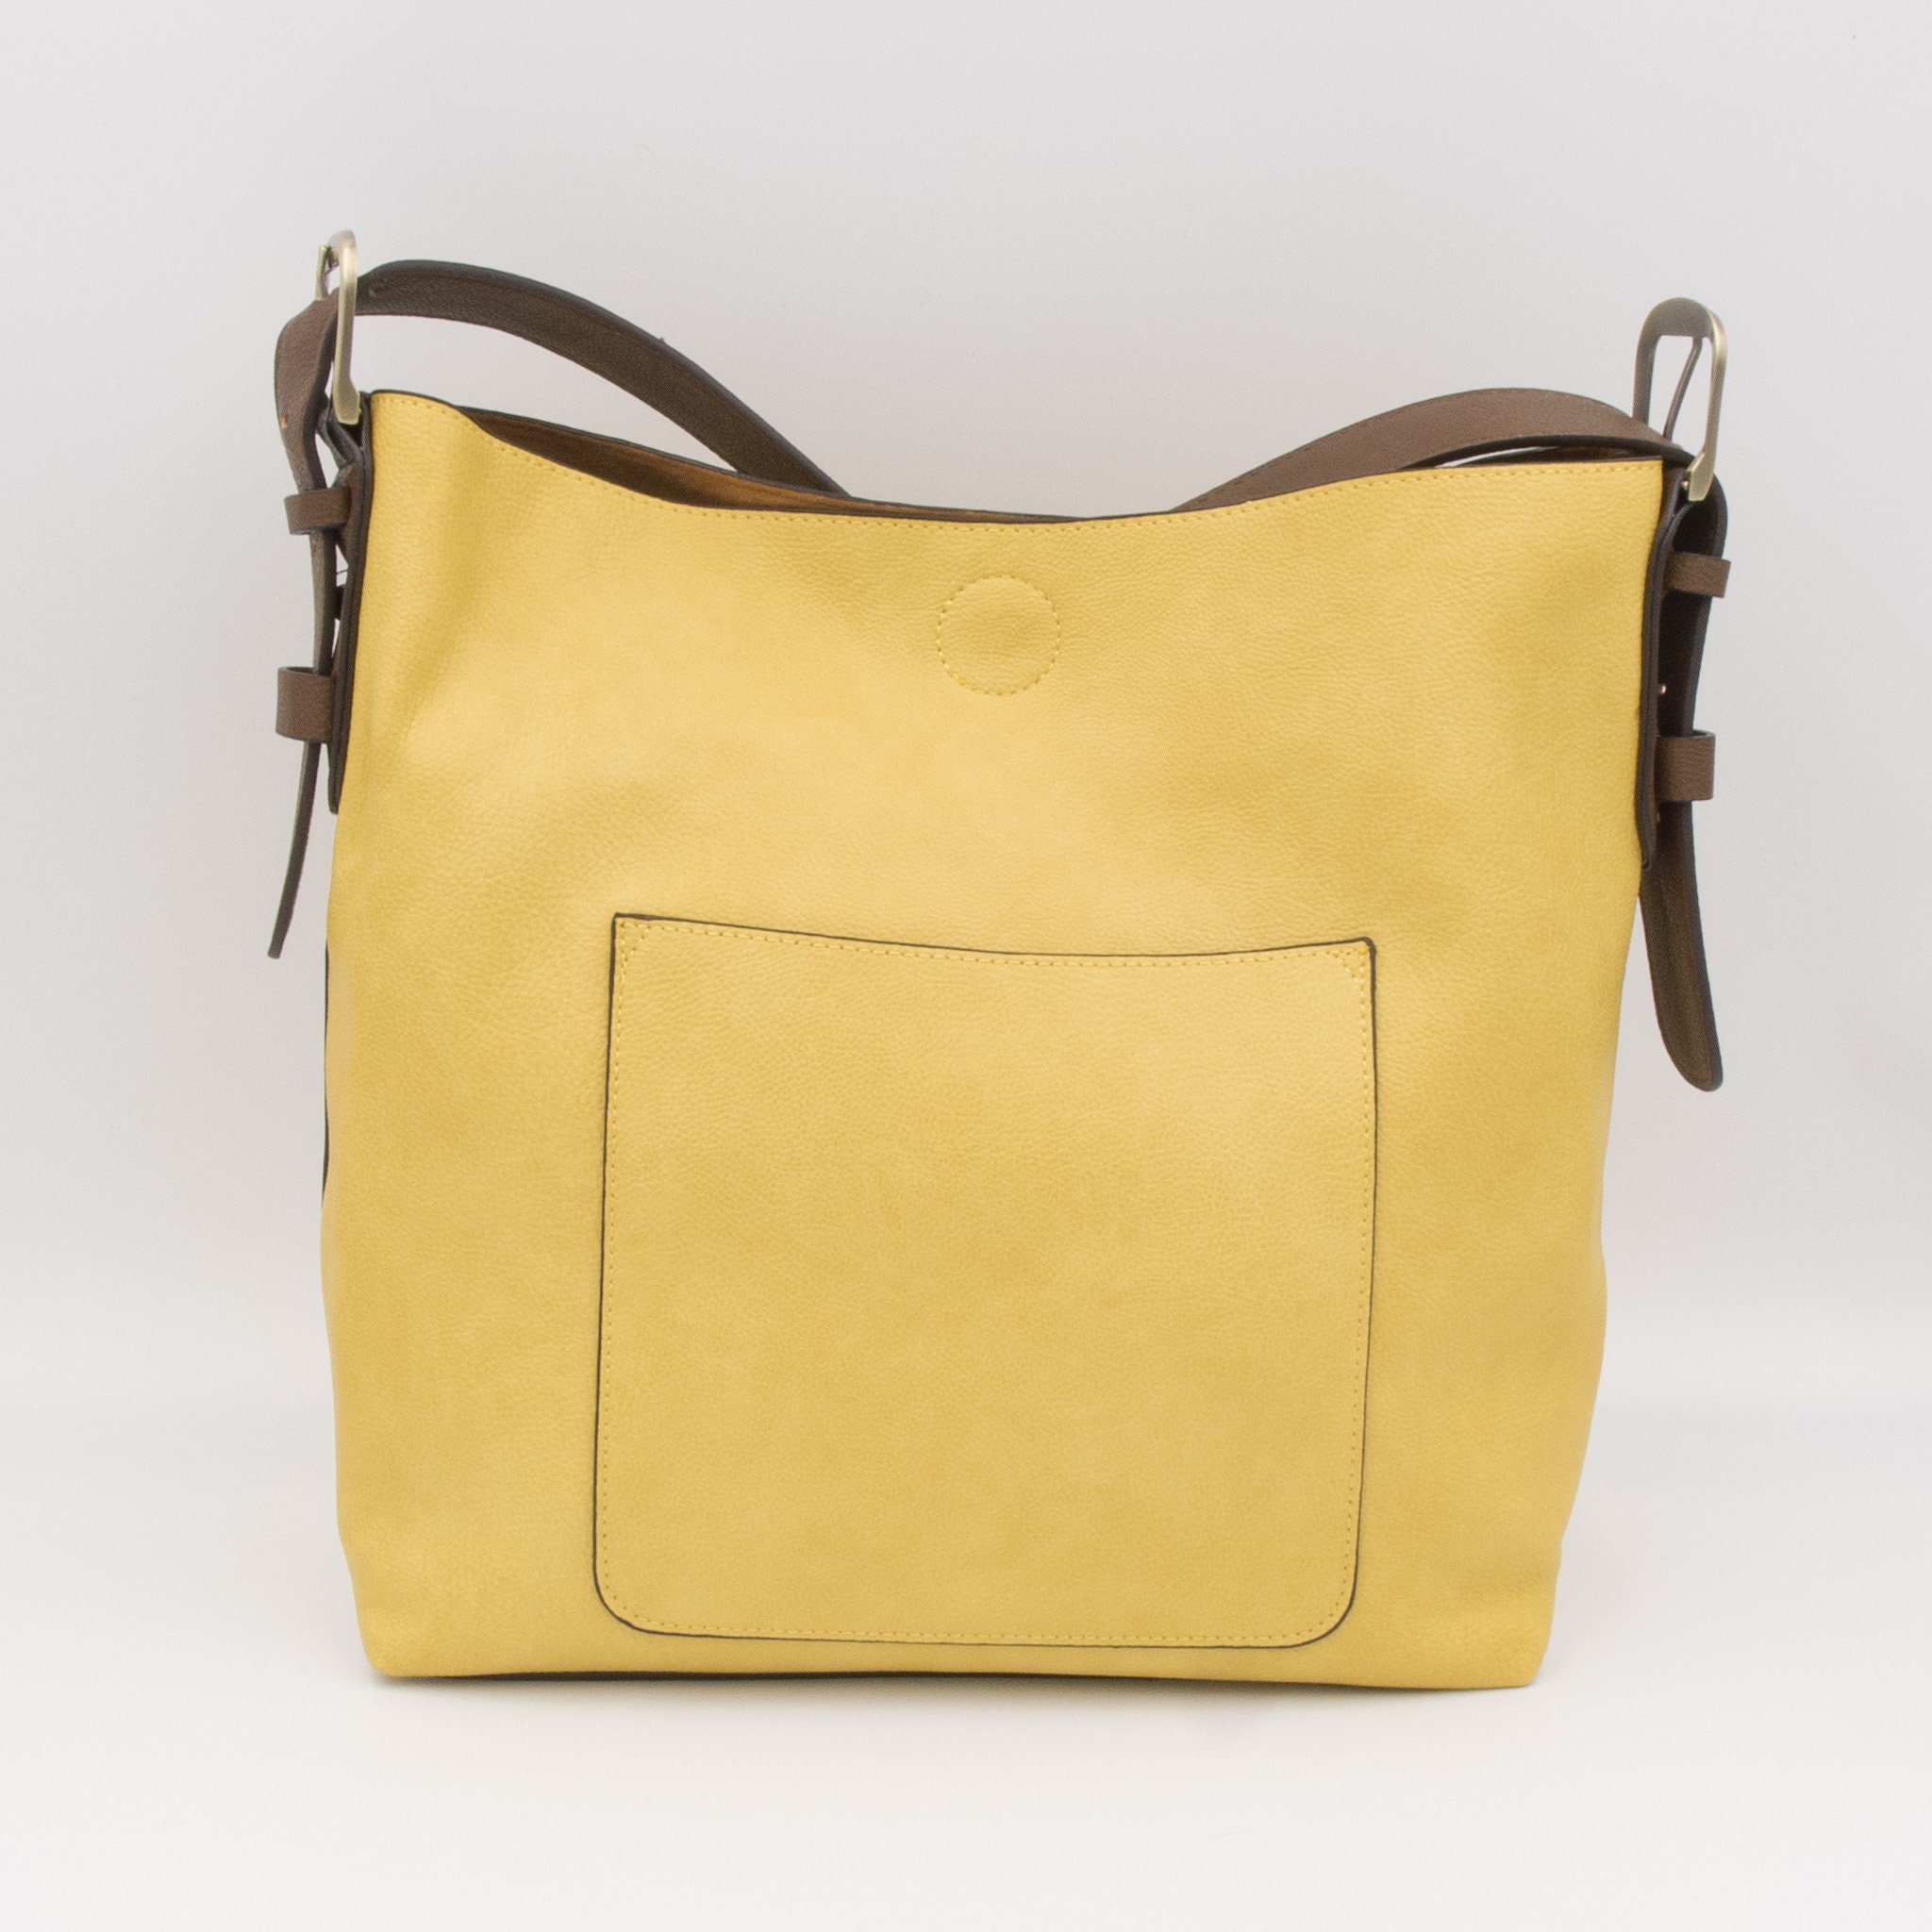 Joy Susan Vegan Leather Terri Traveler Zip Tote Bag - Multiple Colors Caramel